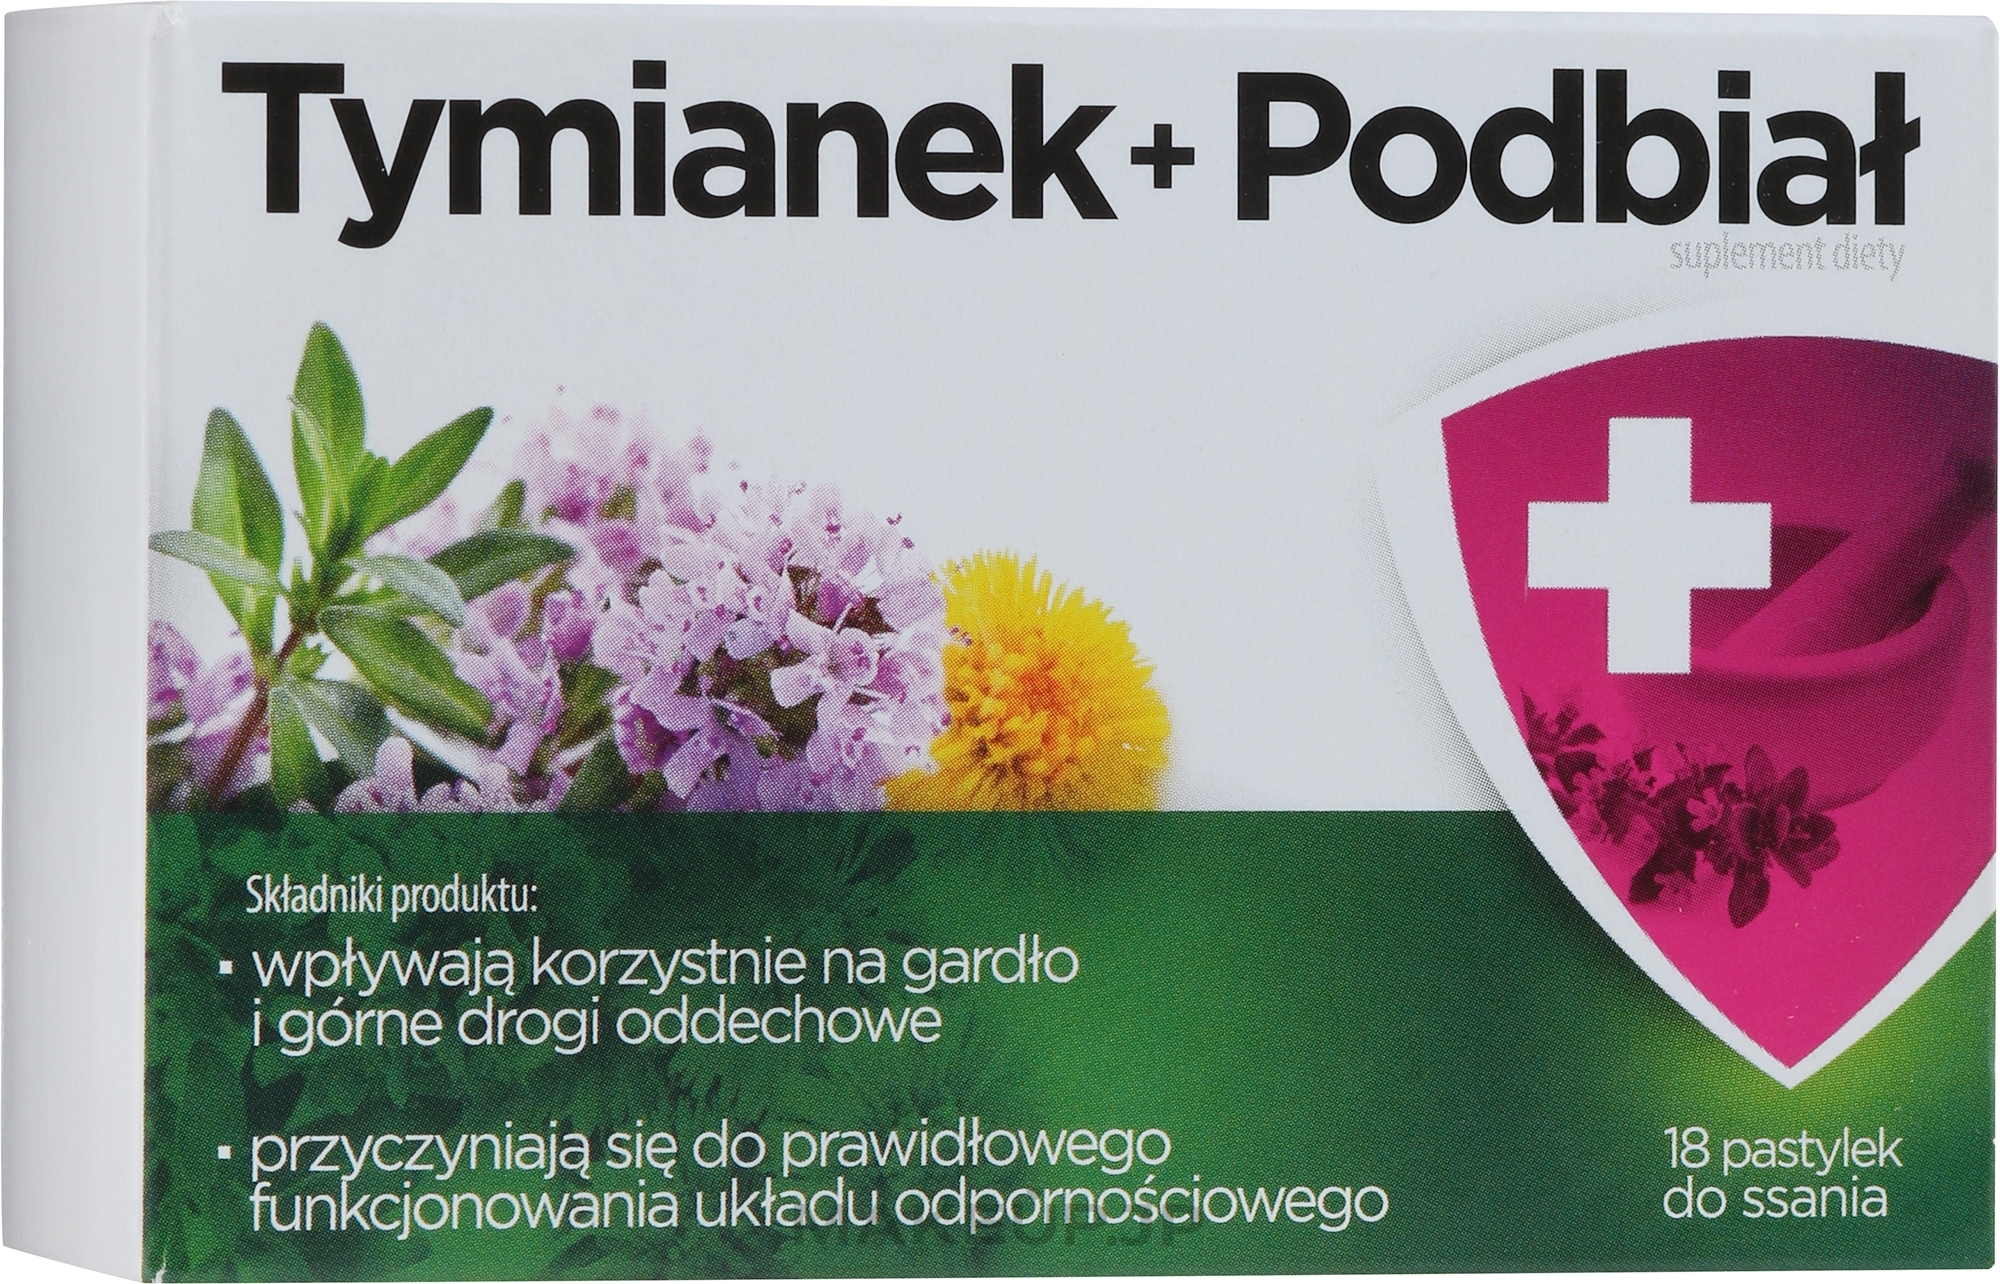 Dietary Supplement - Aflofarm Tymianek + Podbial — photo 18 szt.